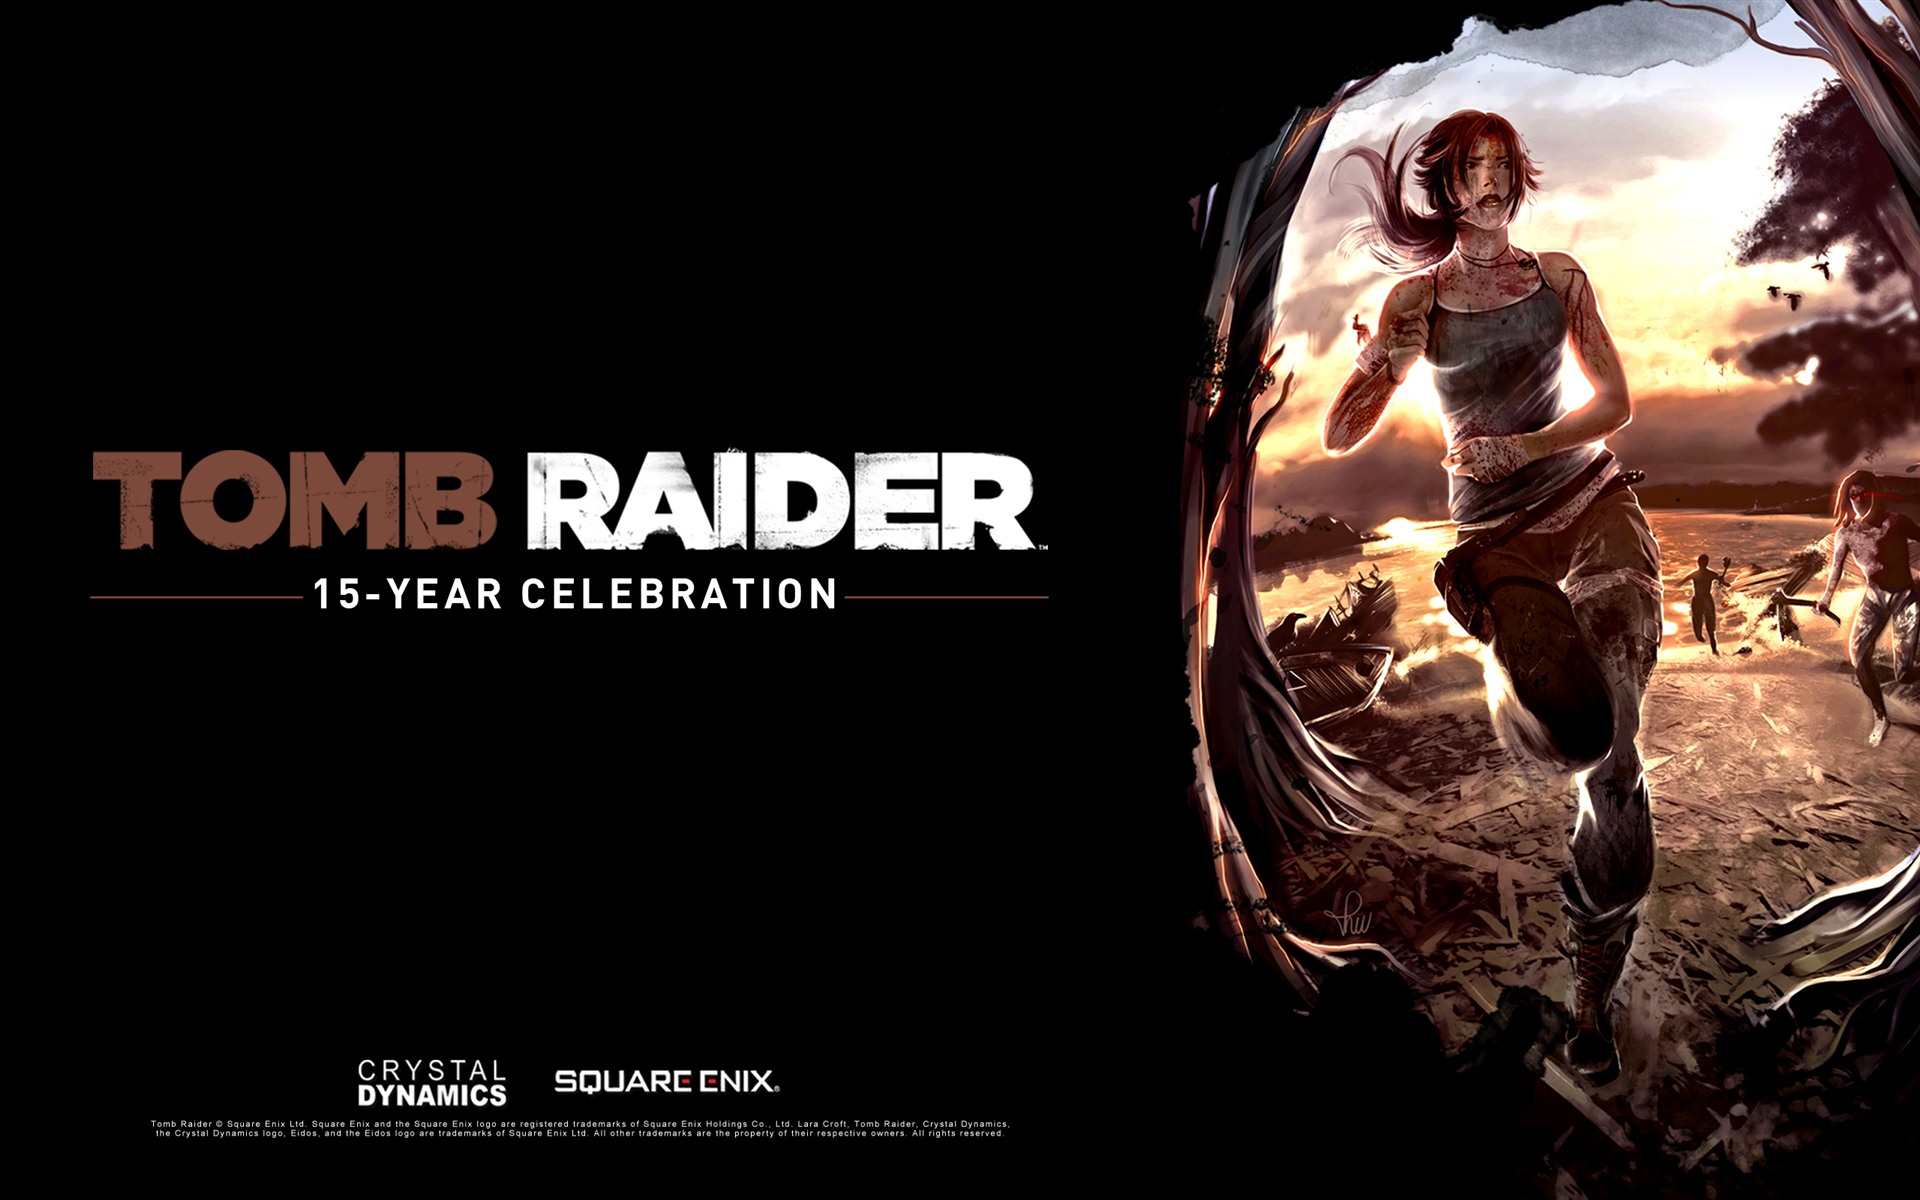 Tomb Raider 15-Year Celebration 古墓丽影15周年纪念版 高清壁纸8 - 1920x1200